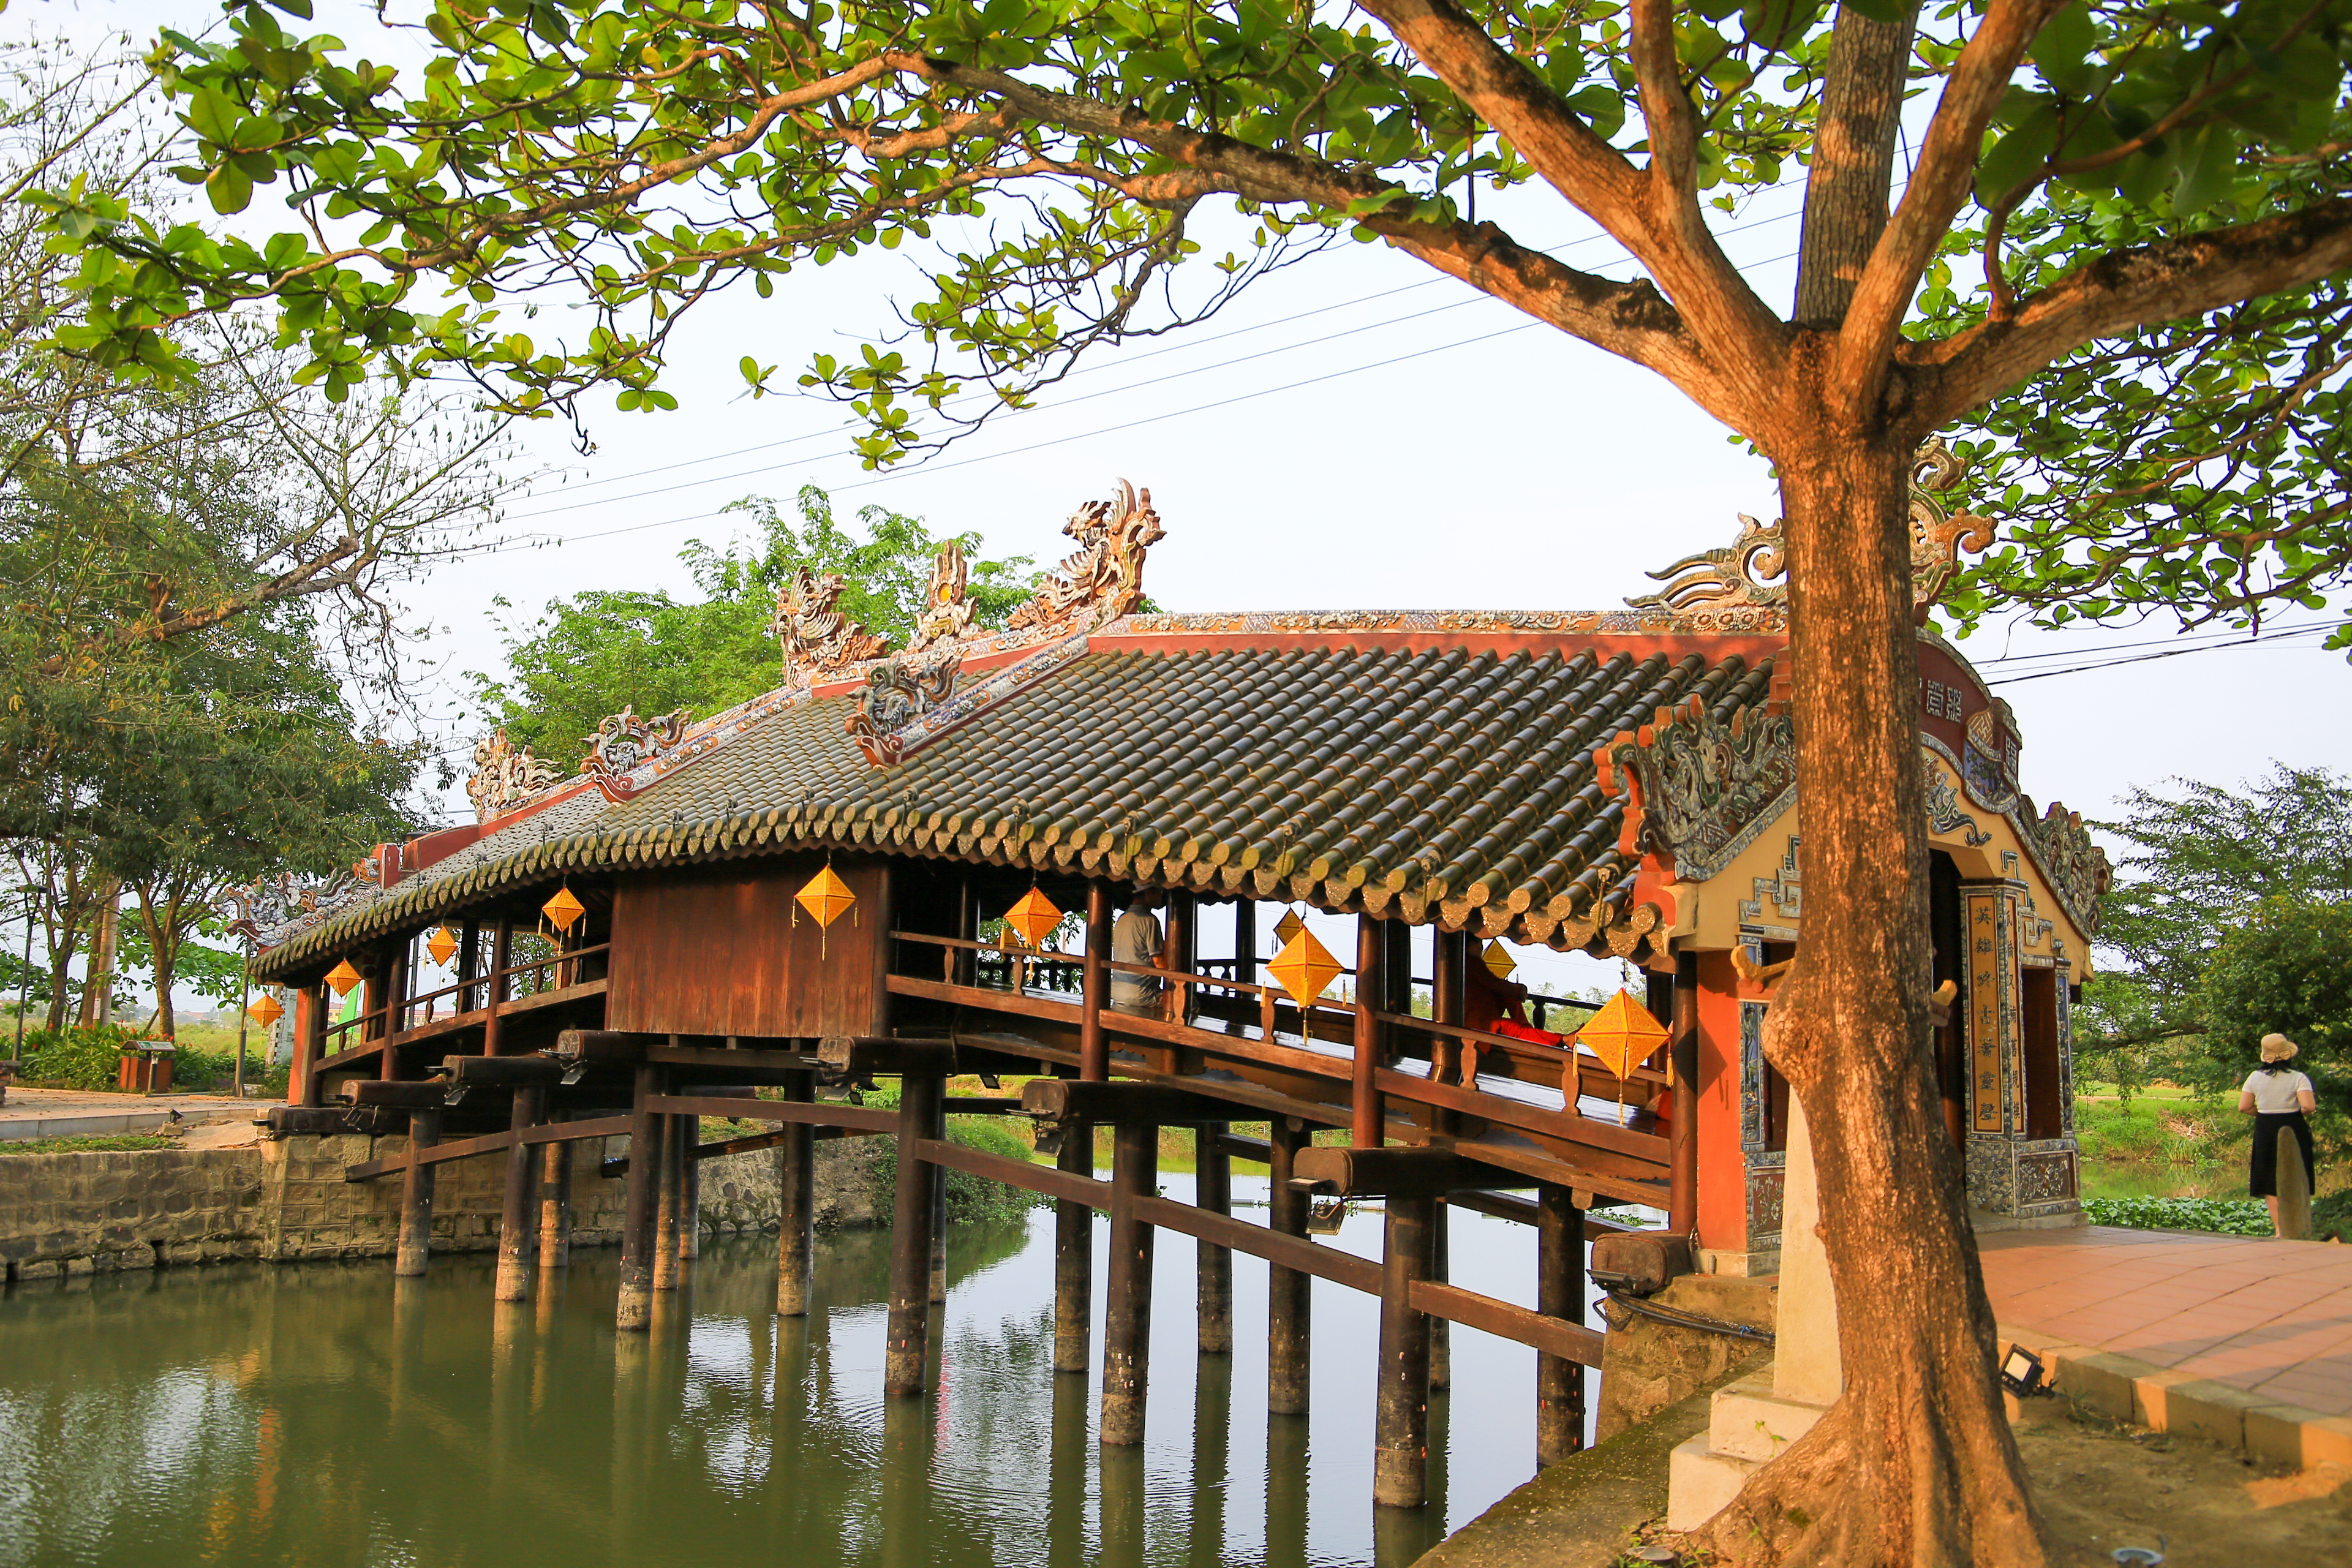 Cầu ngói Thanh Toàn là một cây cầu cổ ở xứ Huế. (Ảnh: Hoàng Hải)